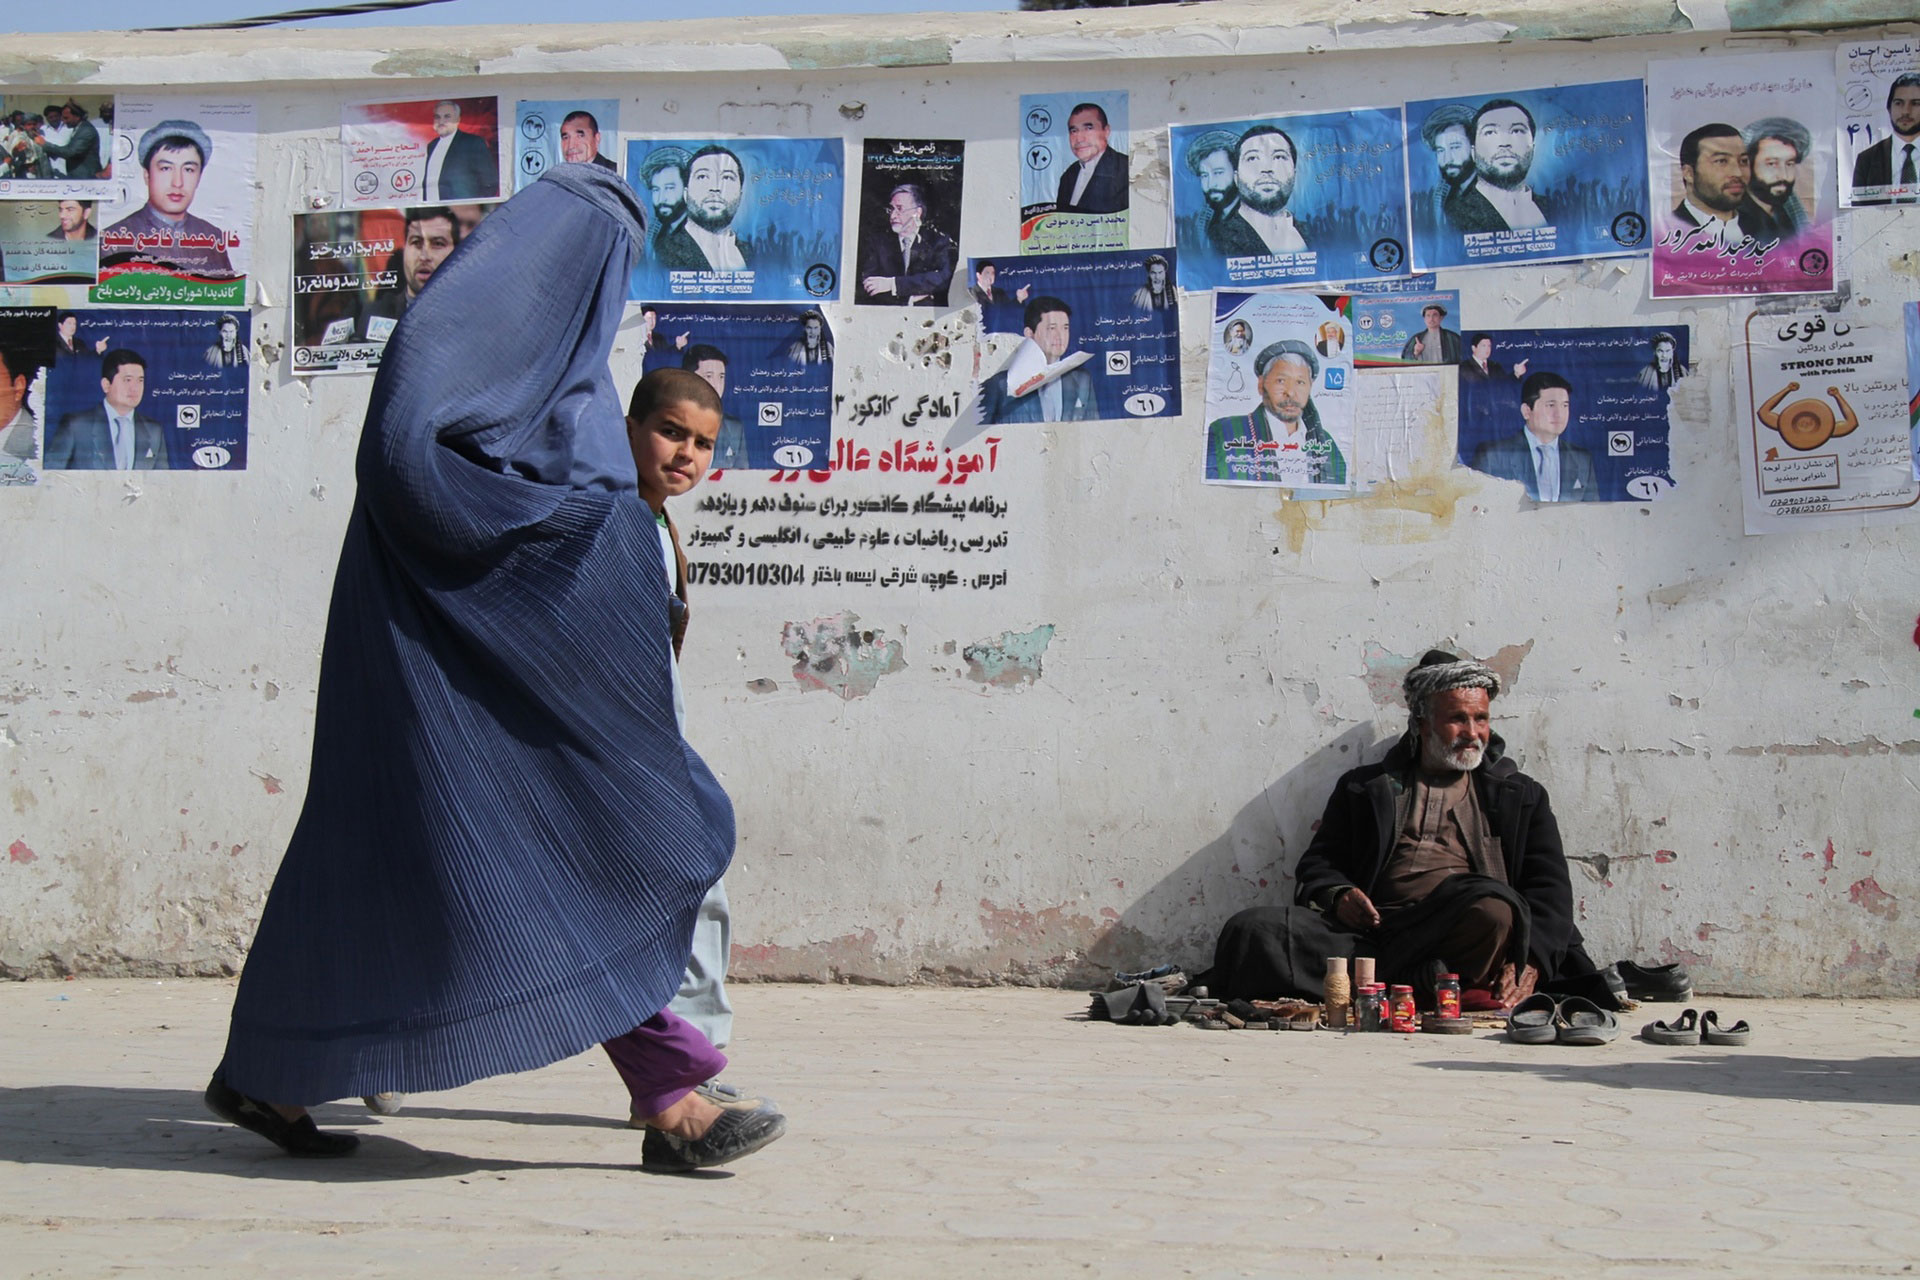 پوسترهای انتخاباتی در افغانستان - زندگی در مسیر بزرگراه افغانستان